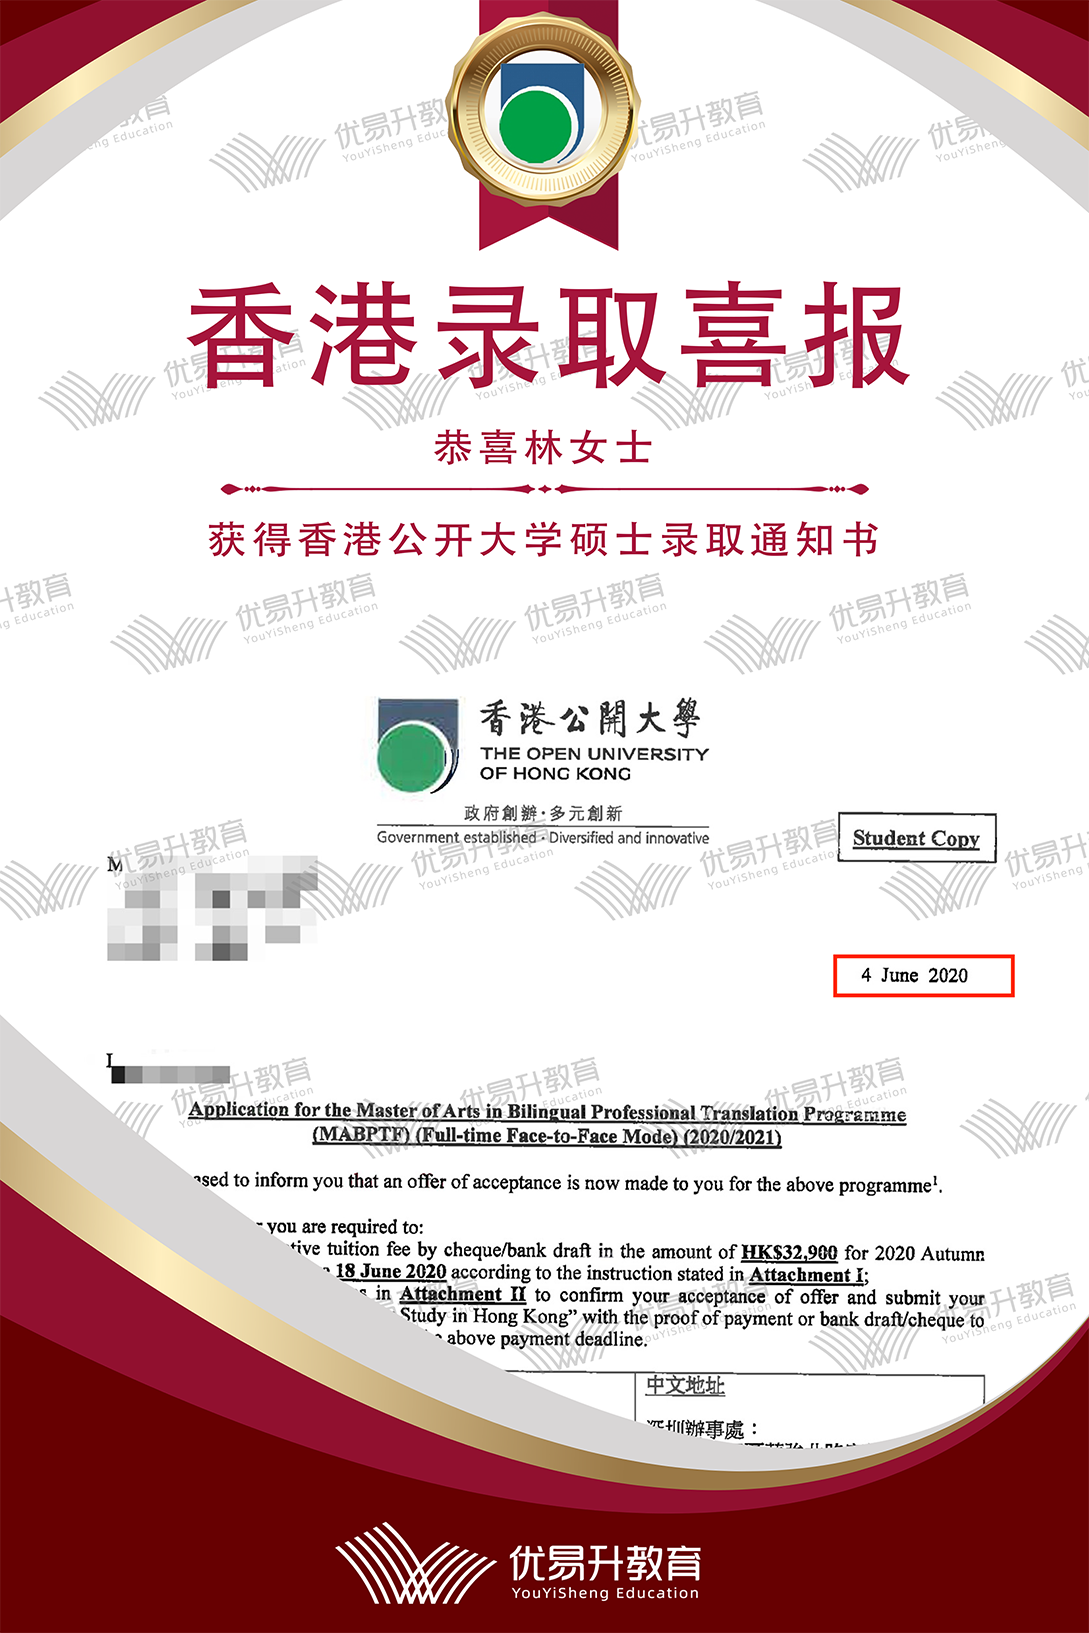 恭喜L同学获得香港都会大学硕士录取通知书2.png